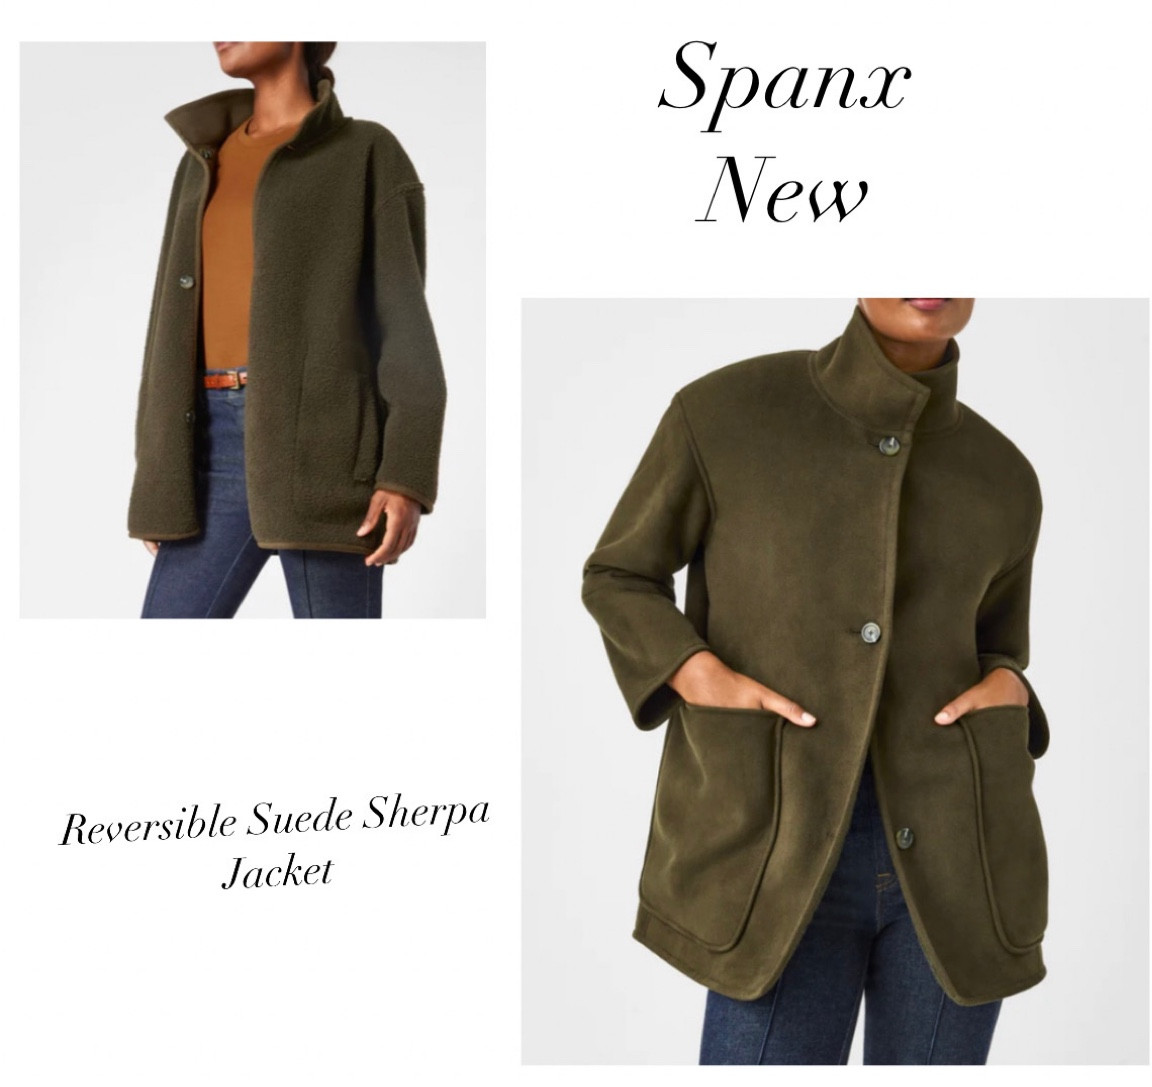 Reversible Suede & Fleece Jacket – Spanx